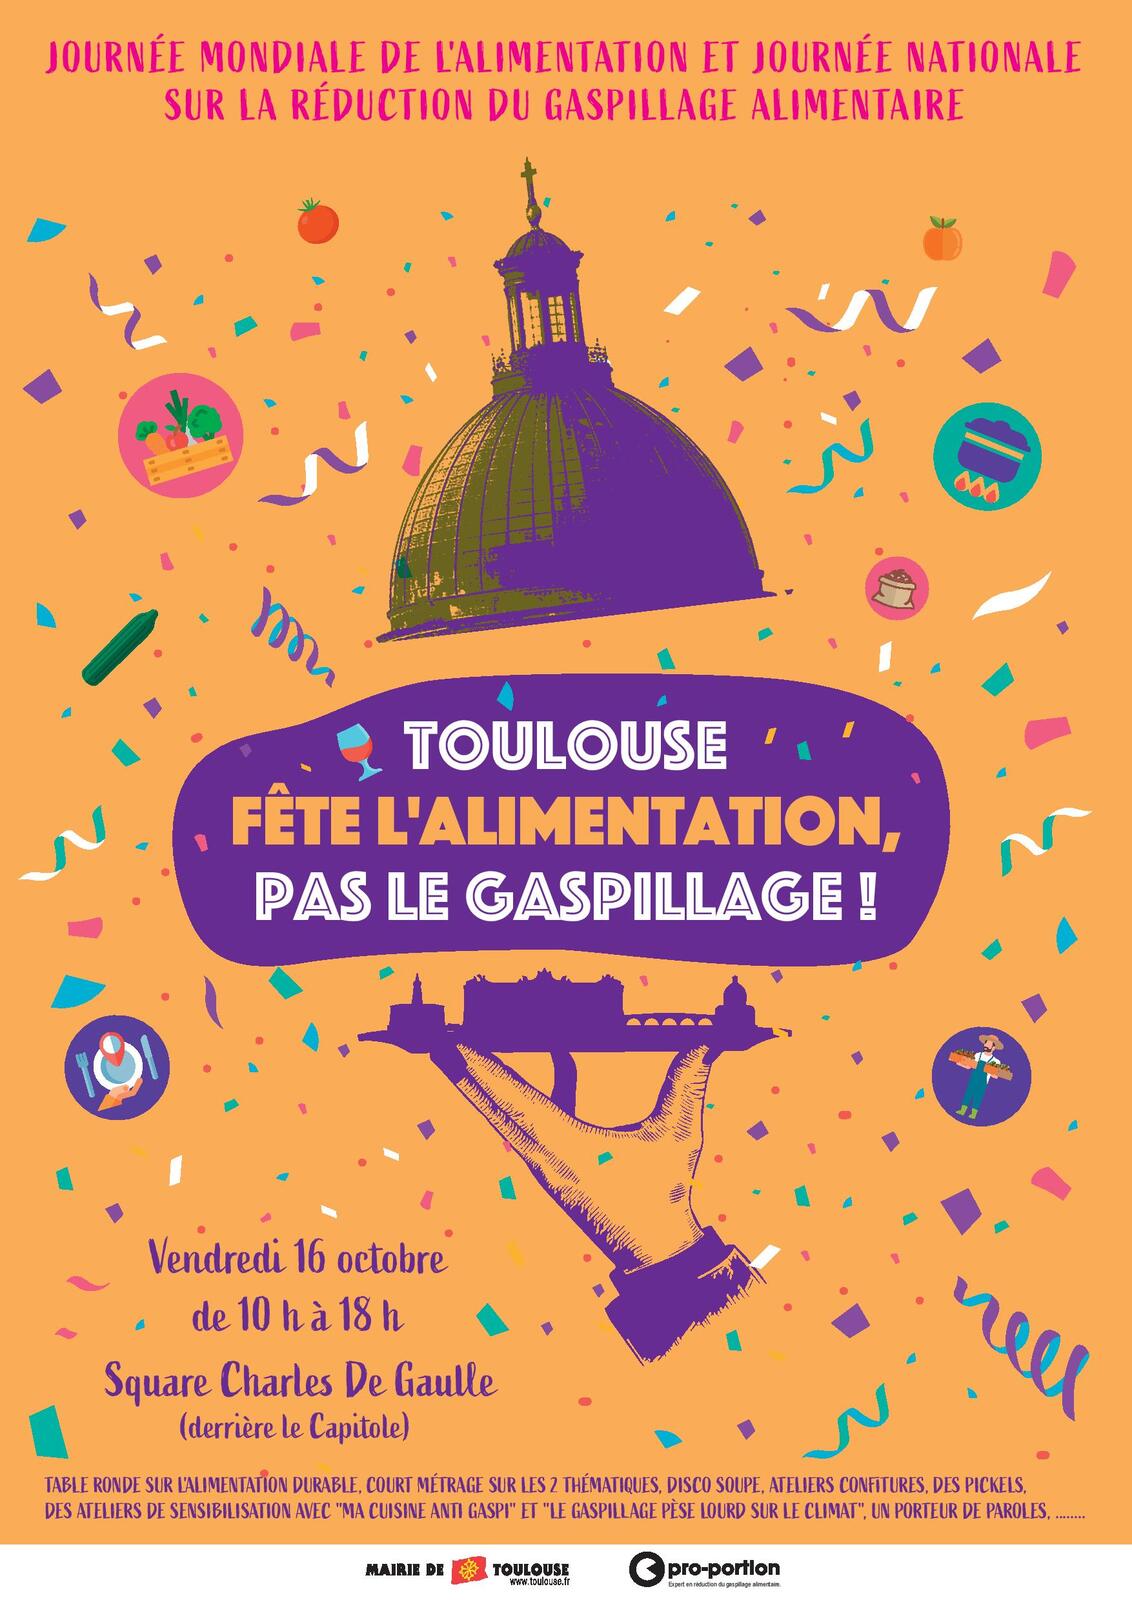 16 Octobre, Toulouse fête l'alimentation pas le gaspillage !